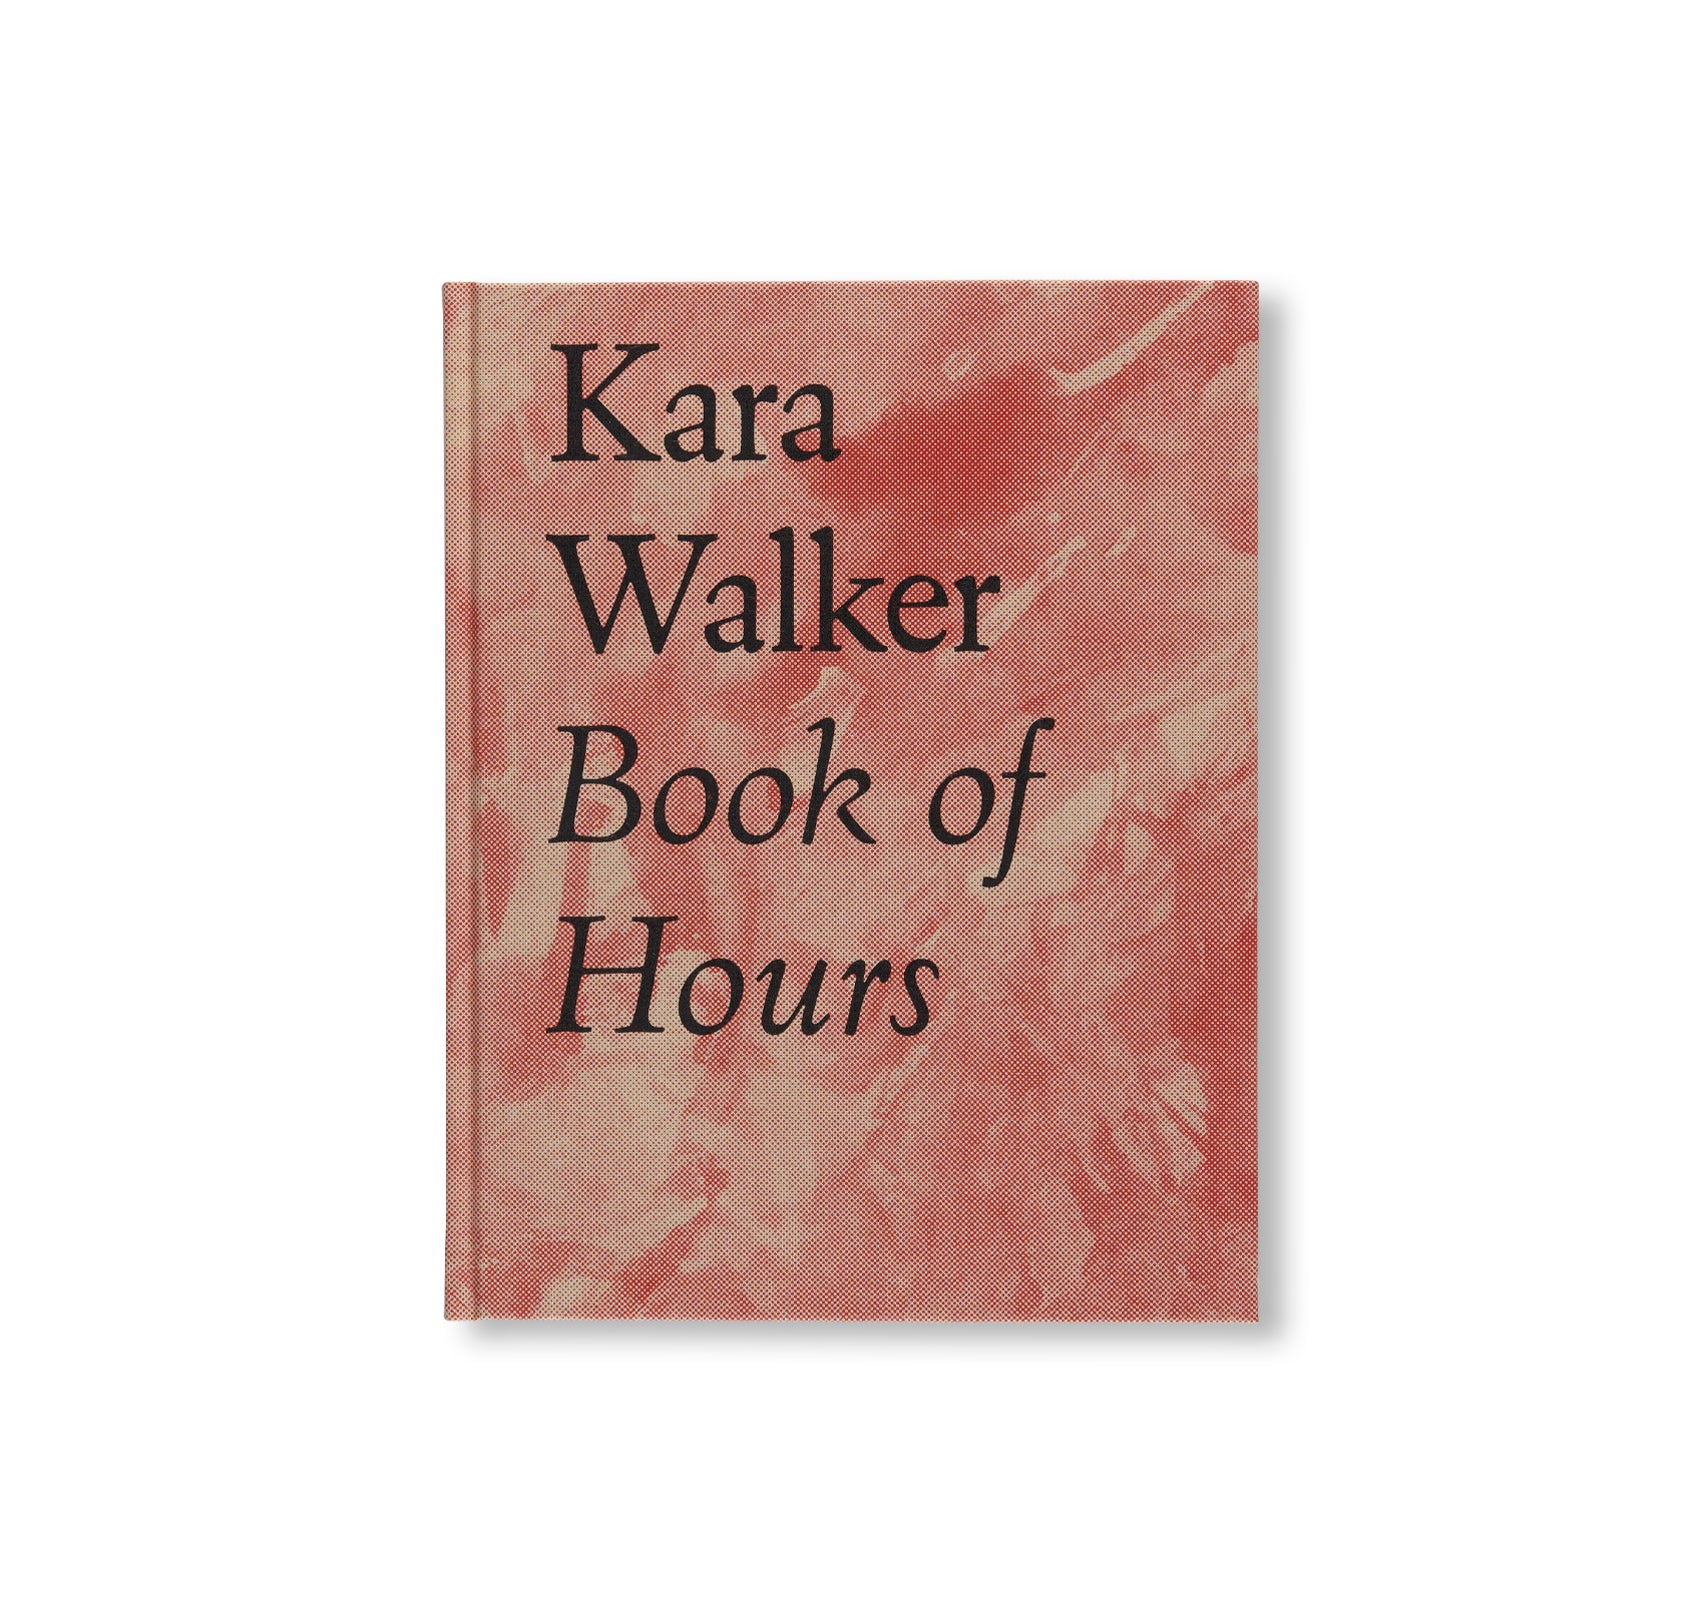 BOOK OF HOURS by Kara Walker